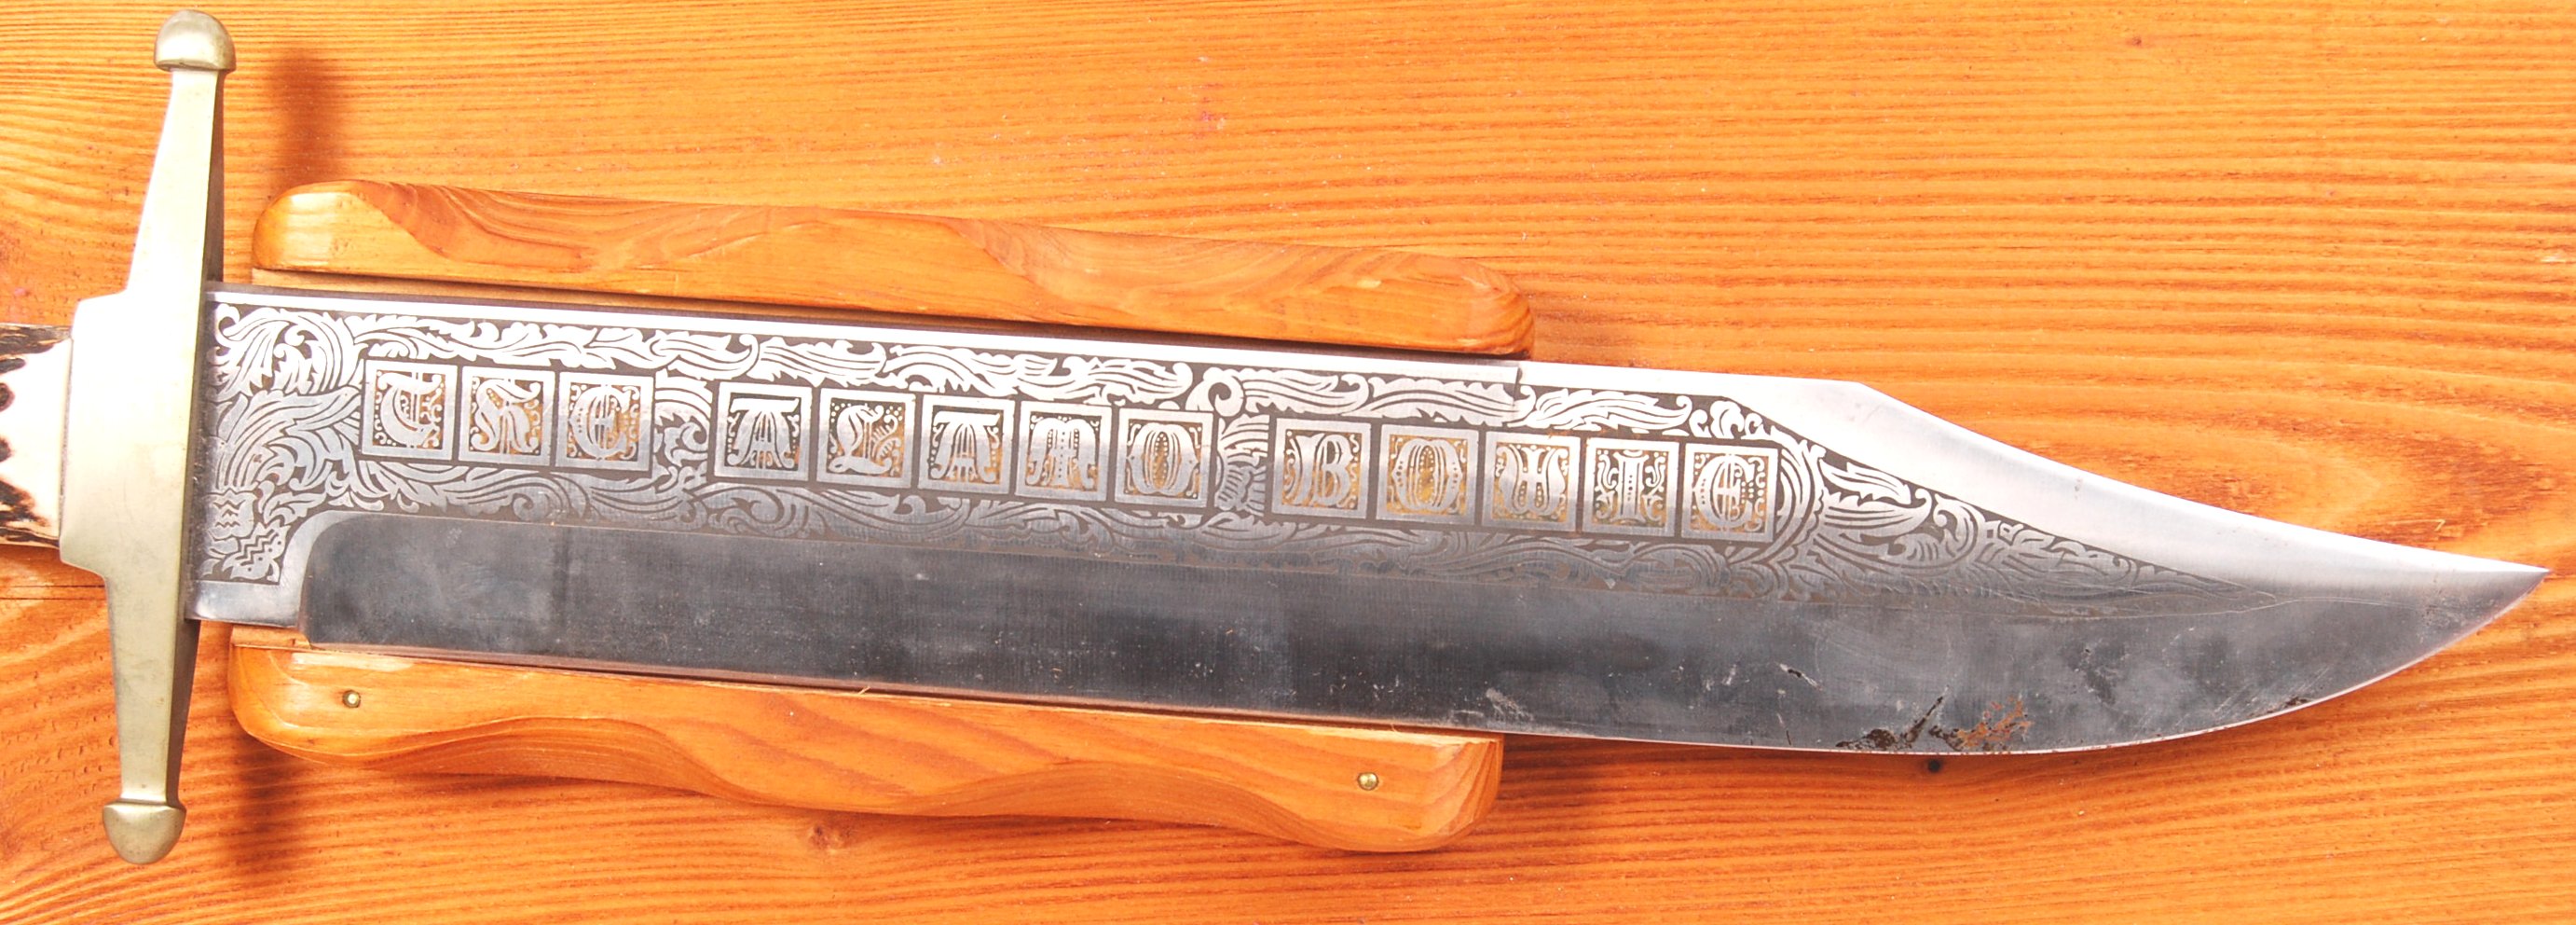 THE ALAMO BOWIE KNIFE - LINDER MESSER SOLINGEN BOWIE KNIFE - Image 2 of 5